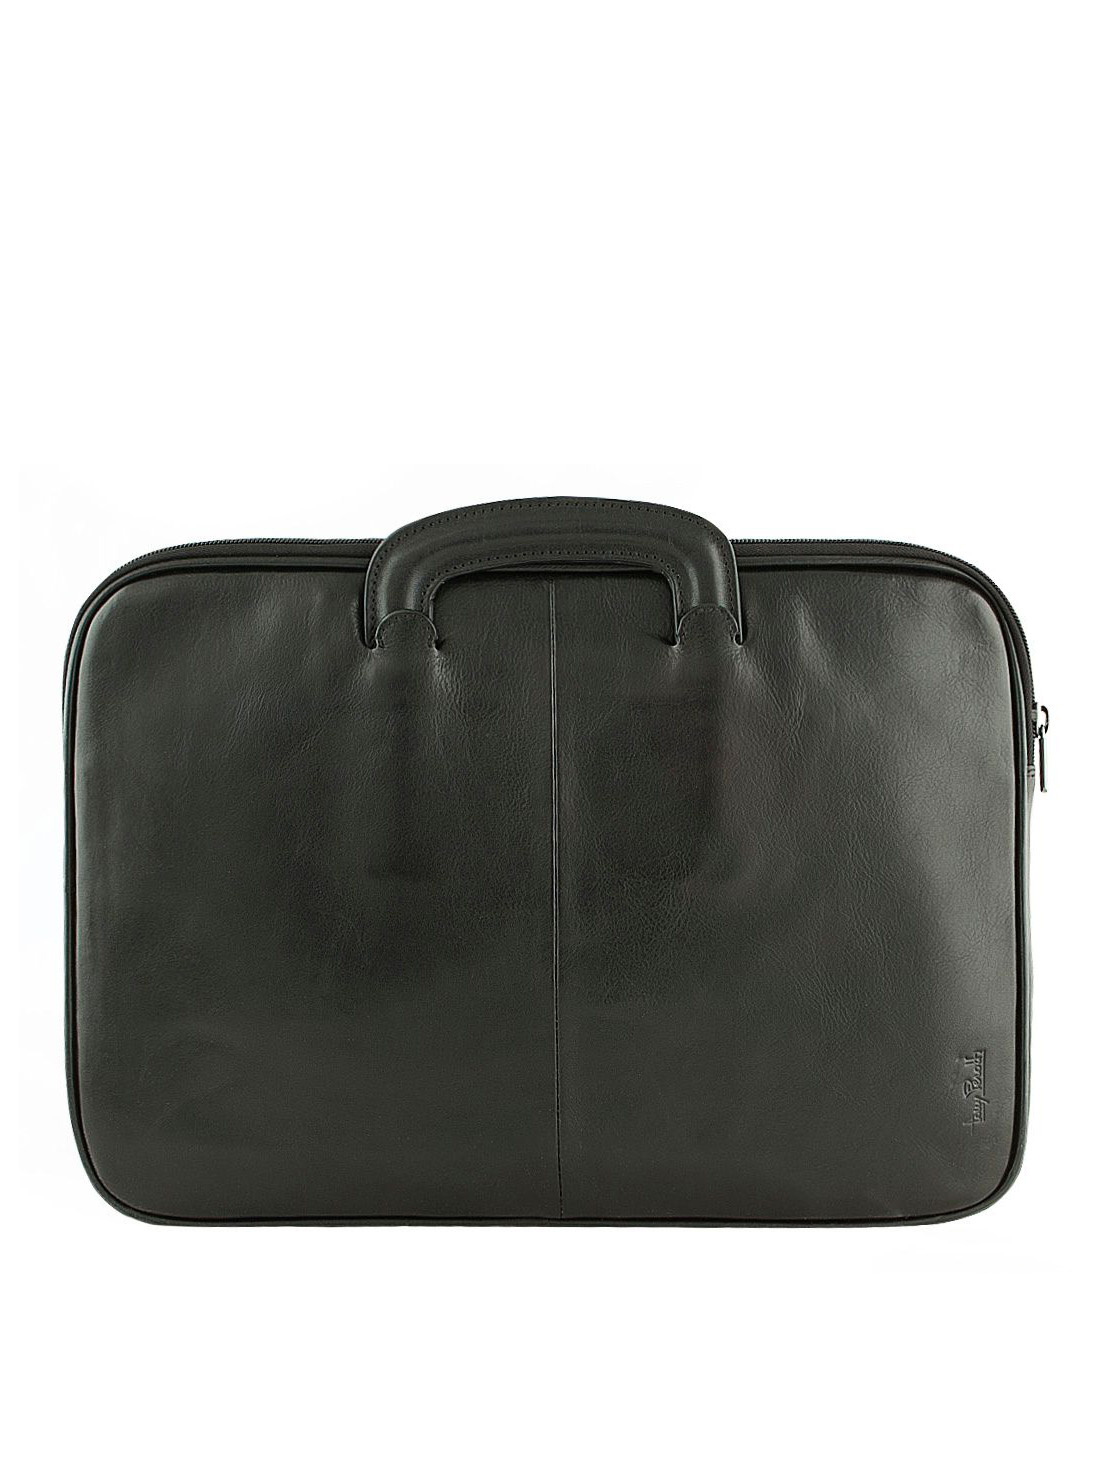 Фото Вместительная кожаная сумка формата А4 черного цвета Деловые сумки (А4)